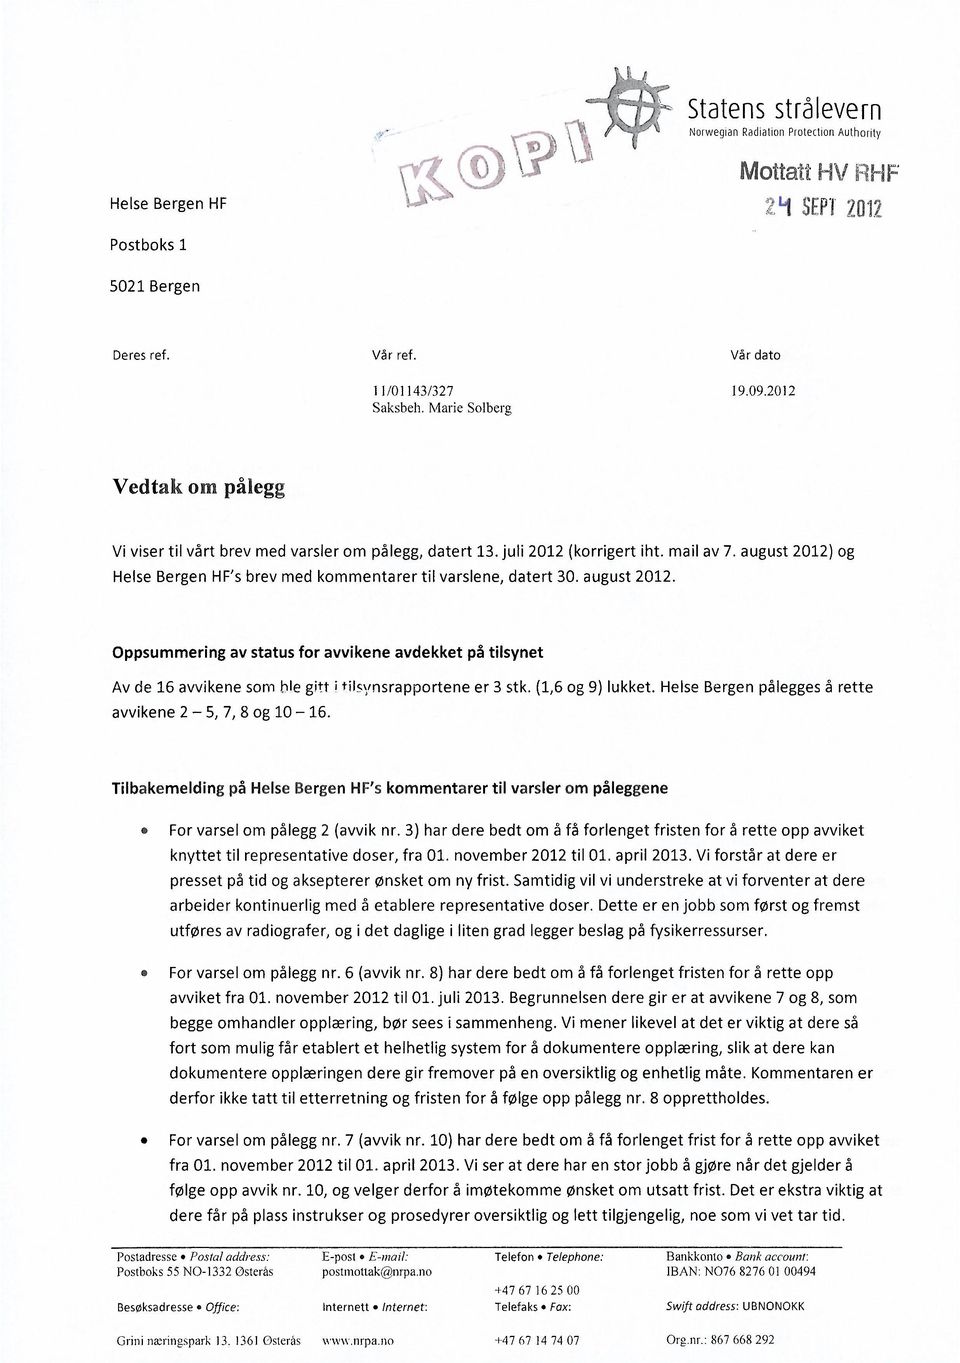 august 2012) og Helse Bergen HF's brev med kommentarer til varslene, datert 30. august 2012.